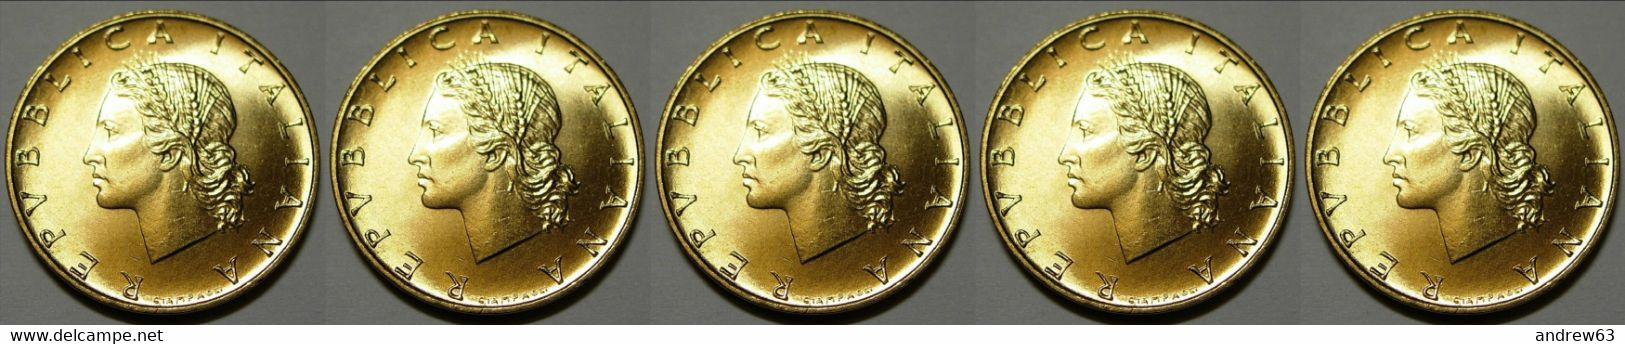 ITALIA - Lire 20 1996 - FDC/Unc Da Rotolino/from Roll 5 Monete/5 Coins - 20 Lire